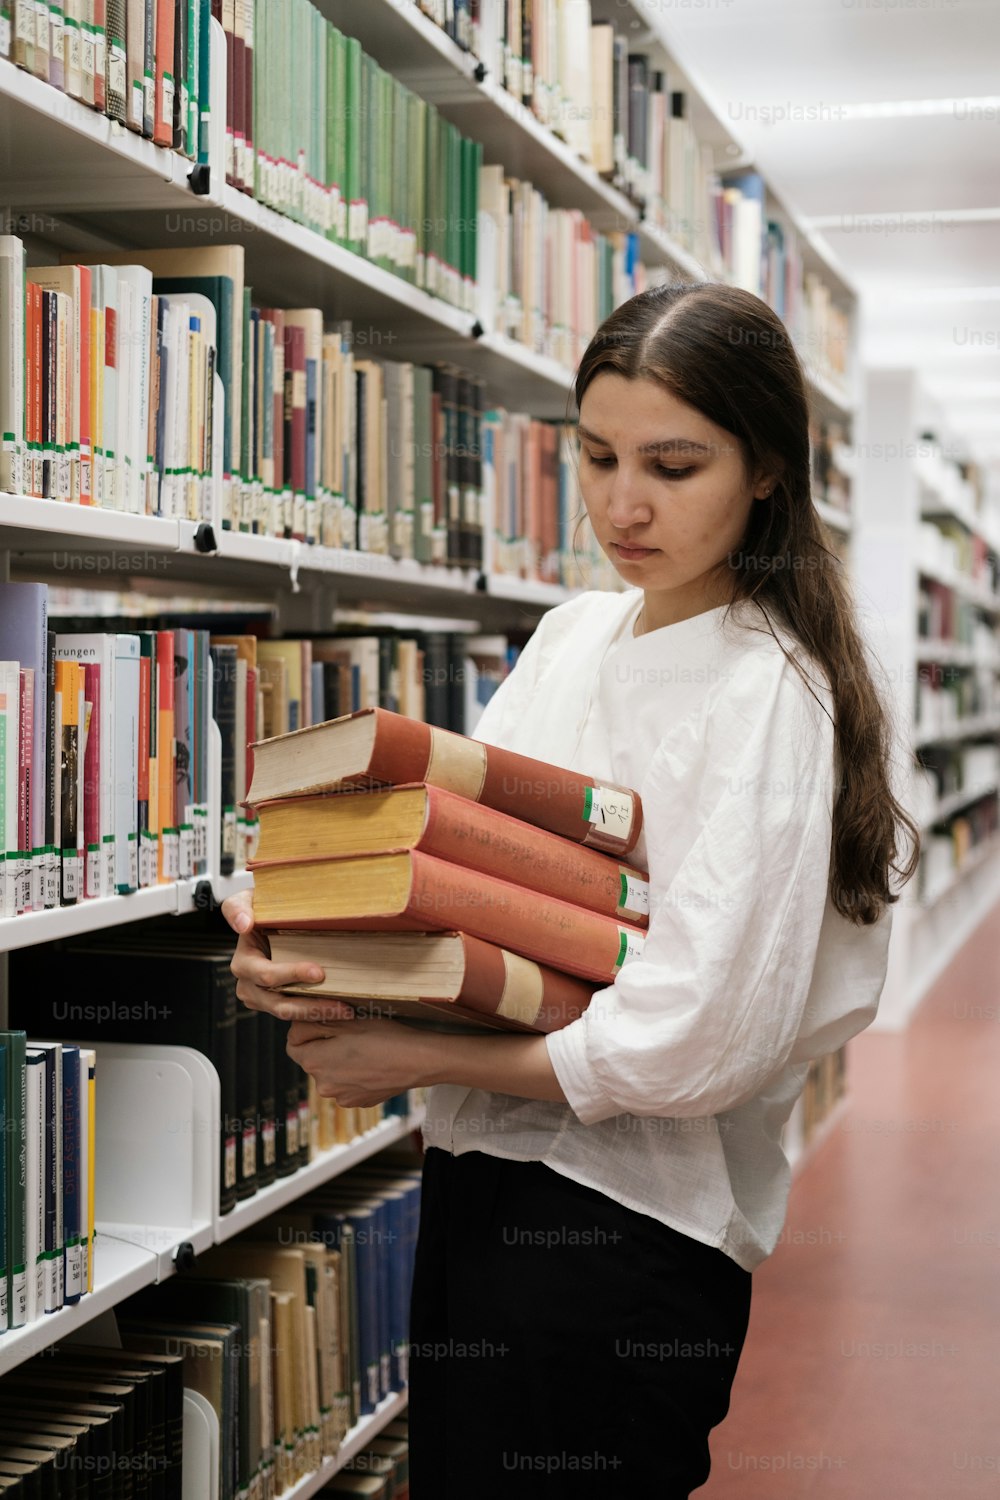 Eine Frau, die einen Stapel Bücher in einer Bibliothek hält